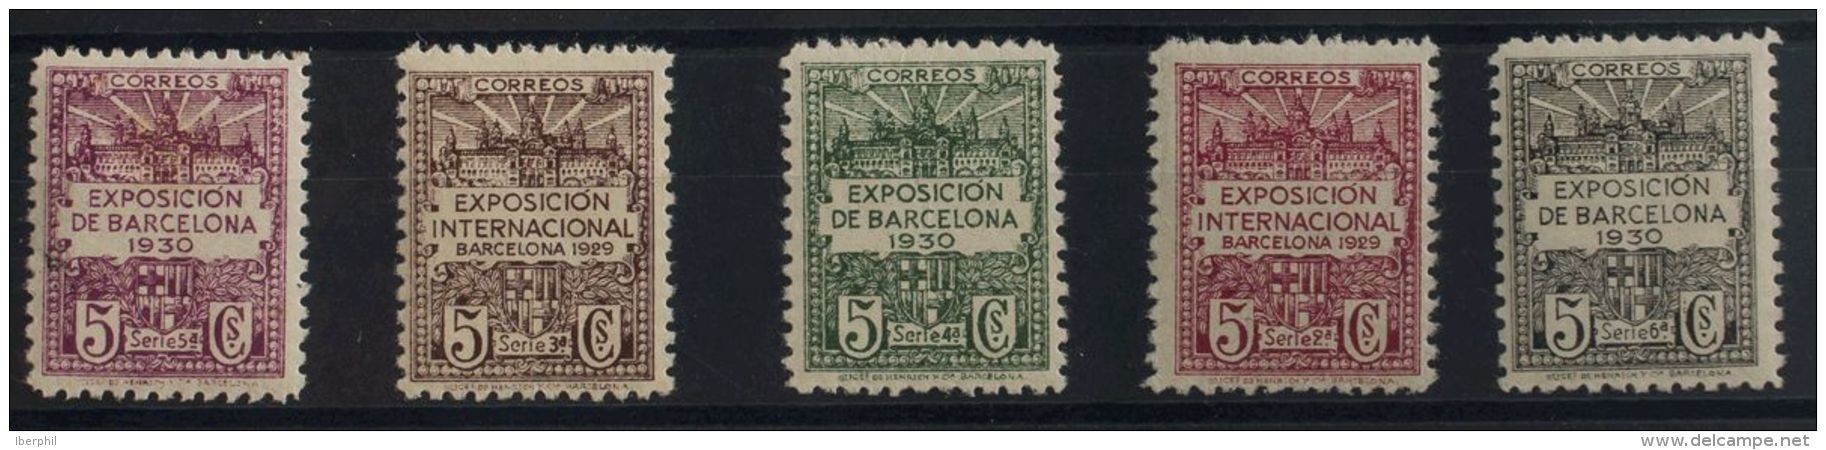 AYUNTAMIENTO DE BARCELONA. * MH 2/6ef Serie Completa, Cinco Valores. SIN COLOR DEL FONDO. MAGNIFICA. (Edifil 2011: 139,5 - Barcelona